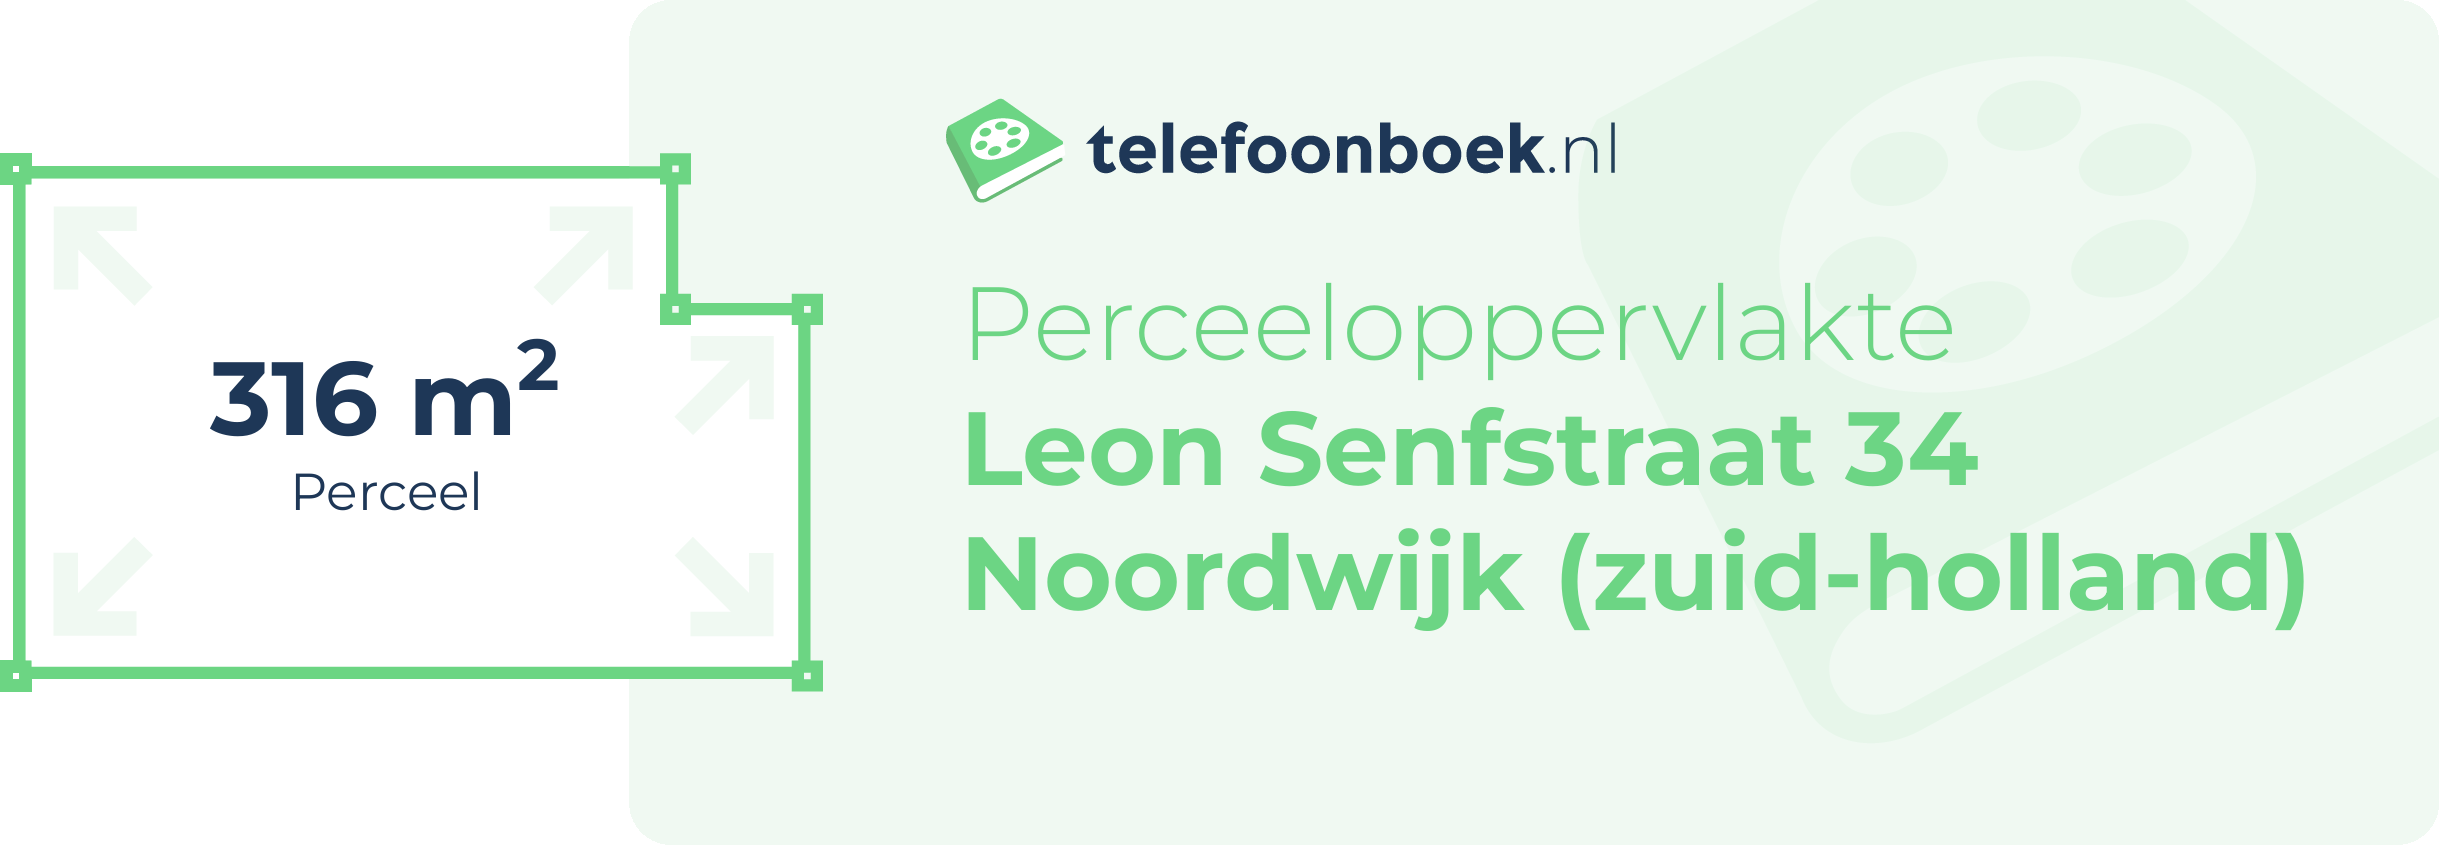 Perceeloppervlakte Leon Senfstraat 34 Noordwijk (Zuid-Holland)